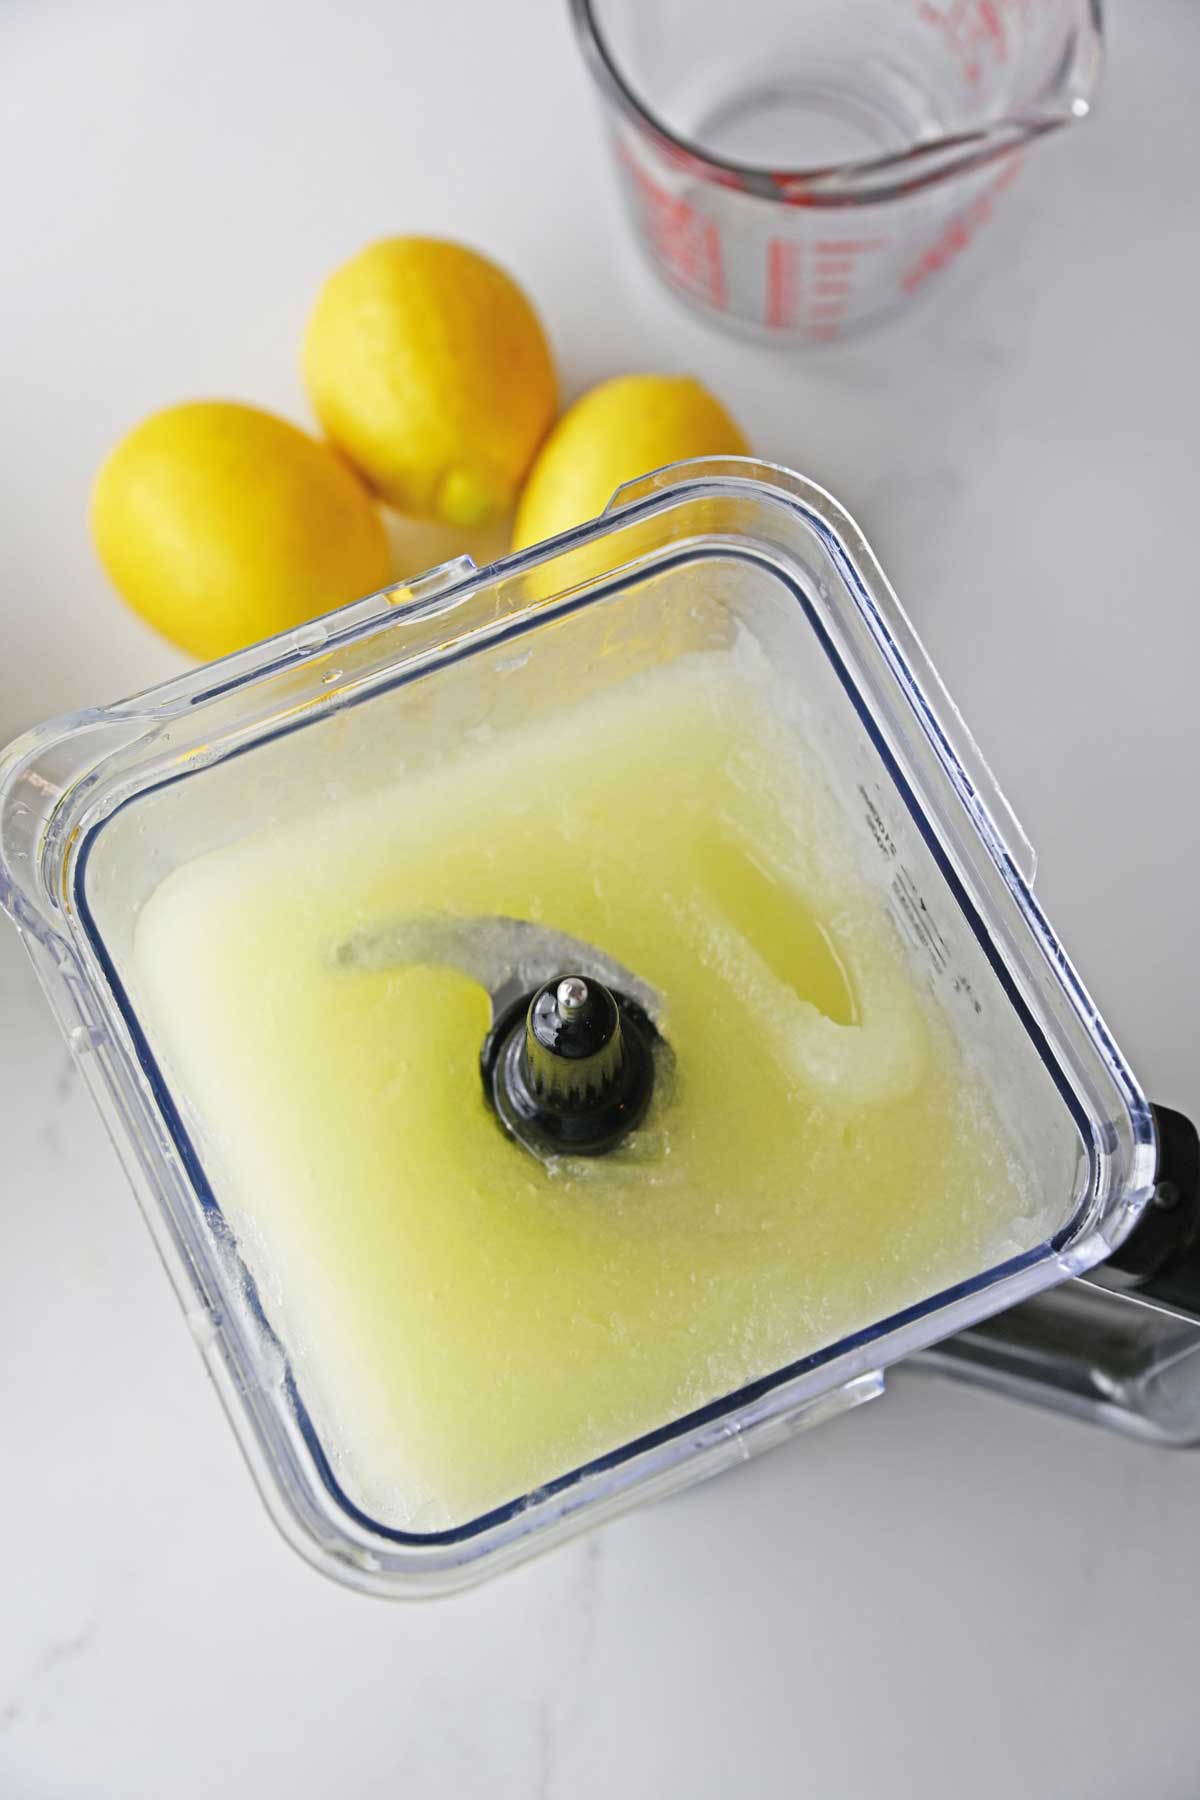 Perfectly made Lemonade Slushie